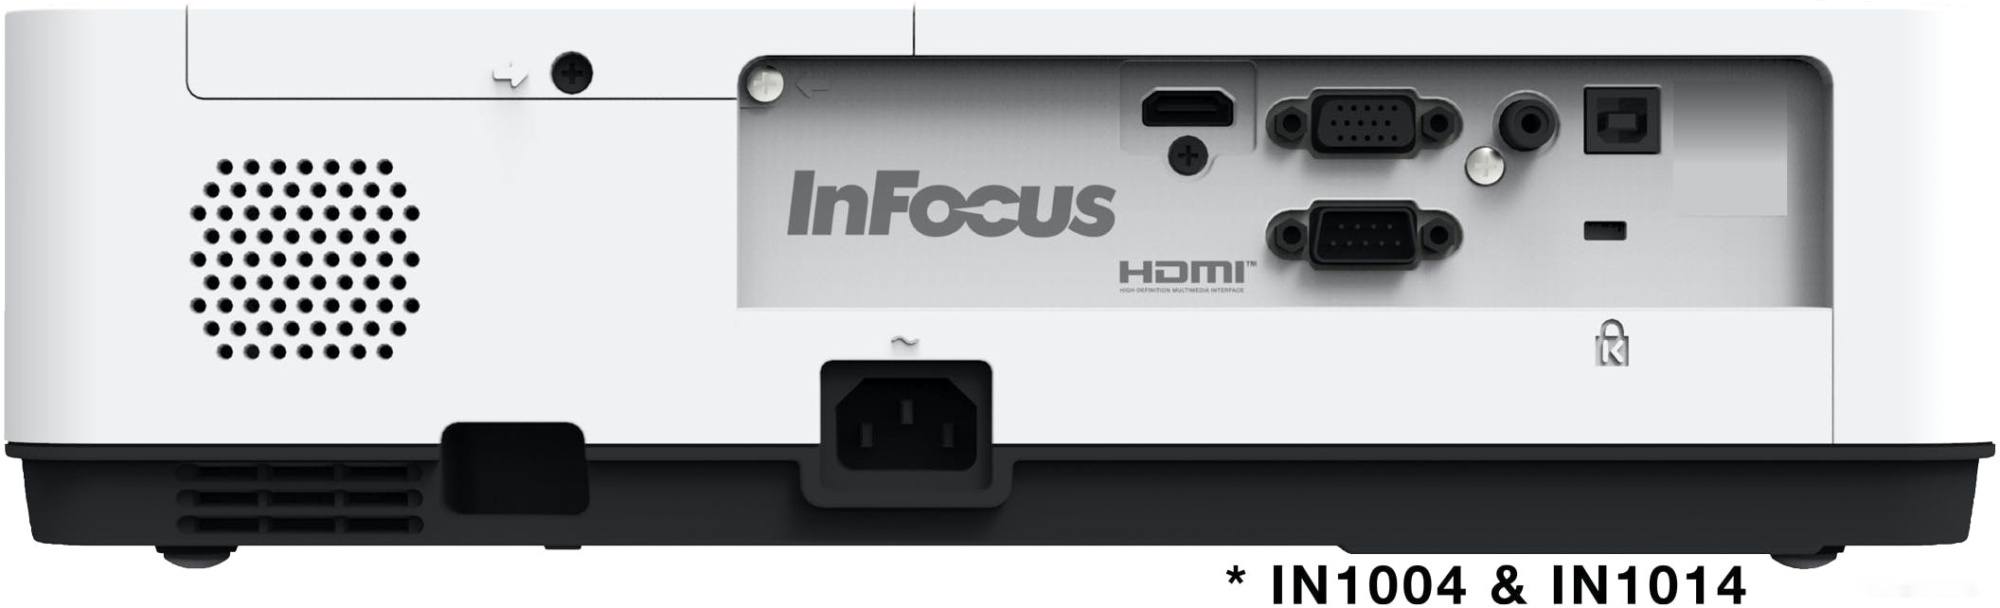 проектор infocus in1014